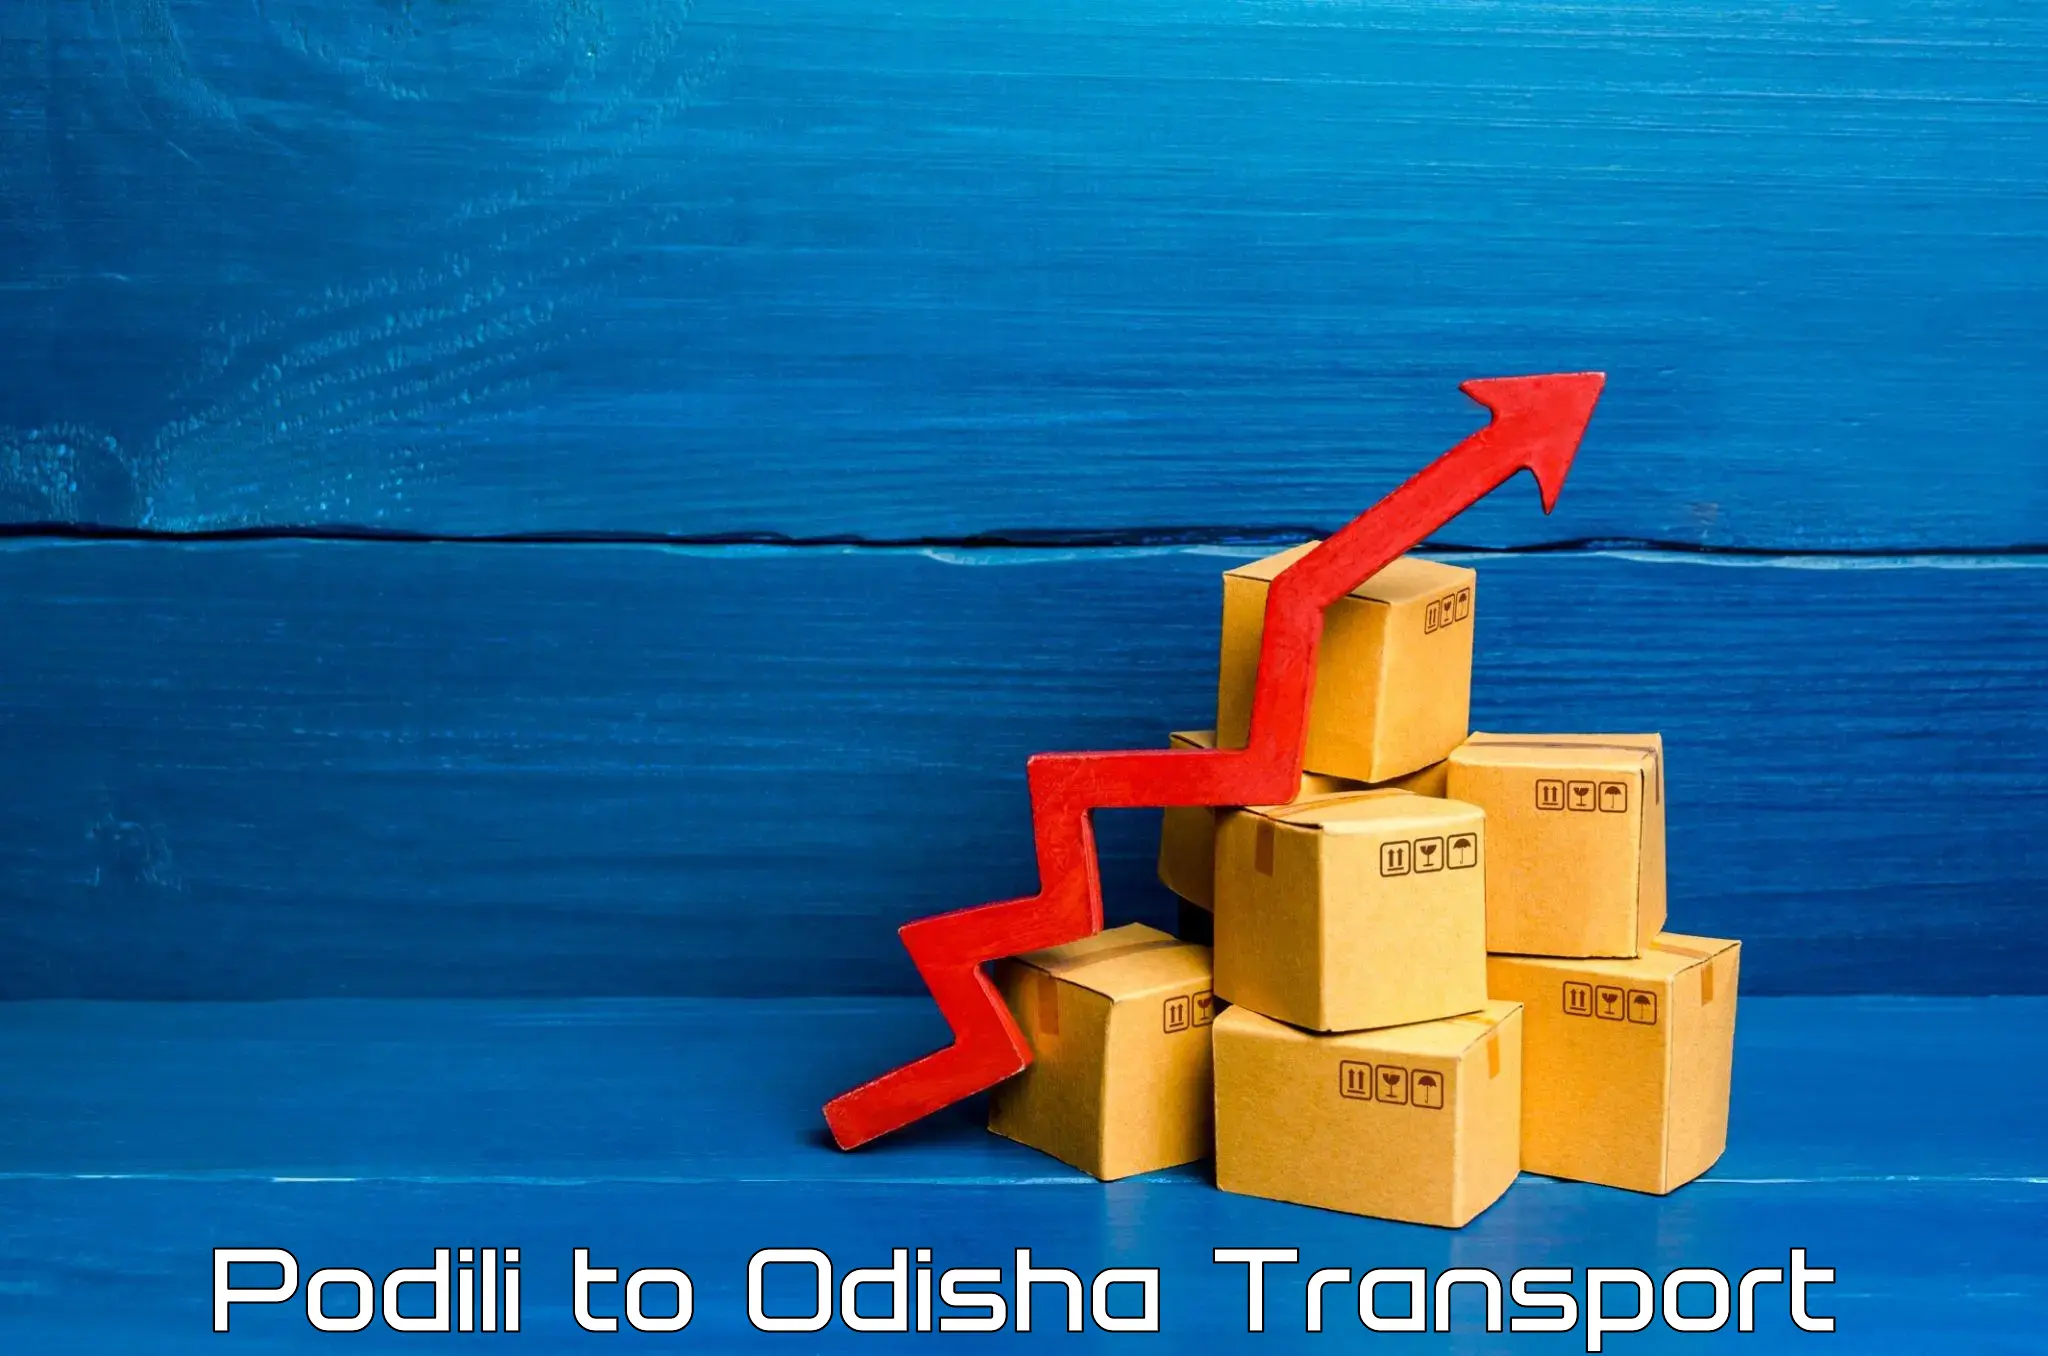 Pick up transport service Podili to Badamba